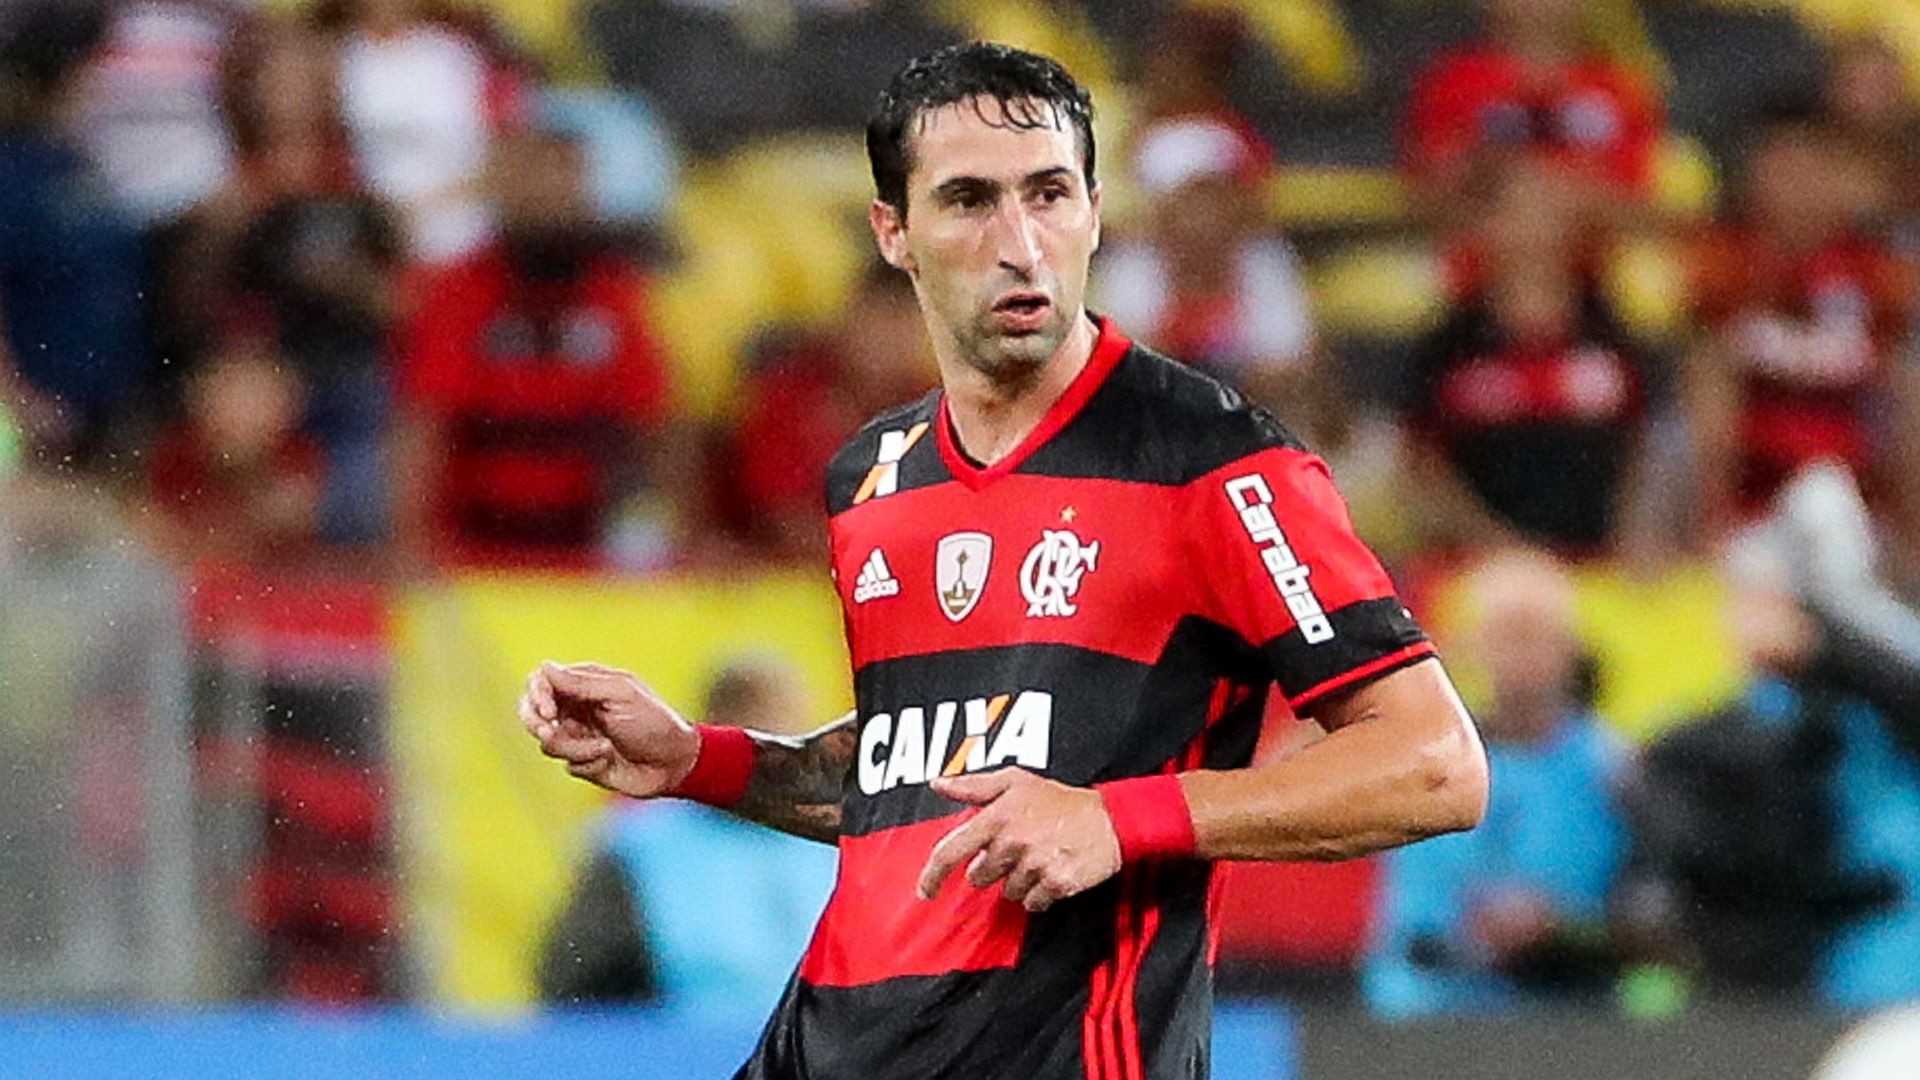 Donatti - Apresentado no Flamengo em julho de 2016, o argentino conviveu com lesões e foi pouco aproveitado.